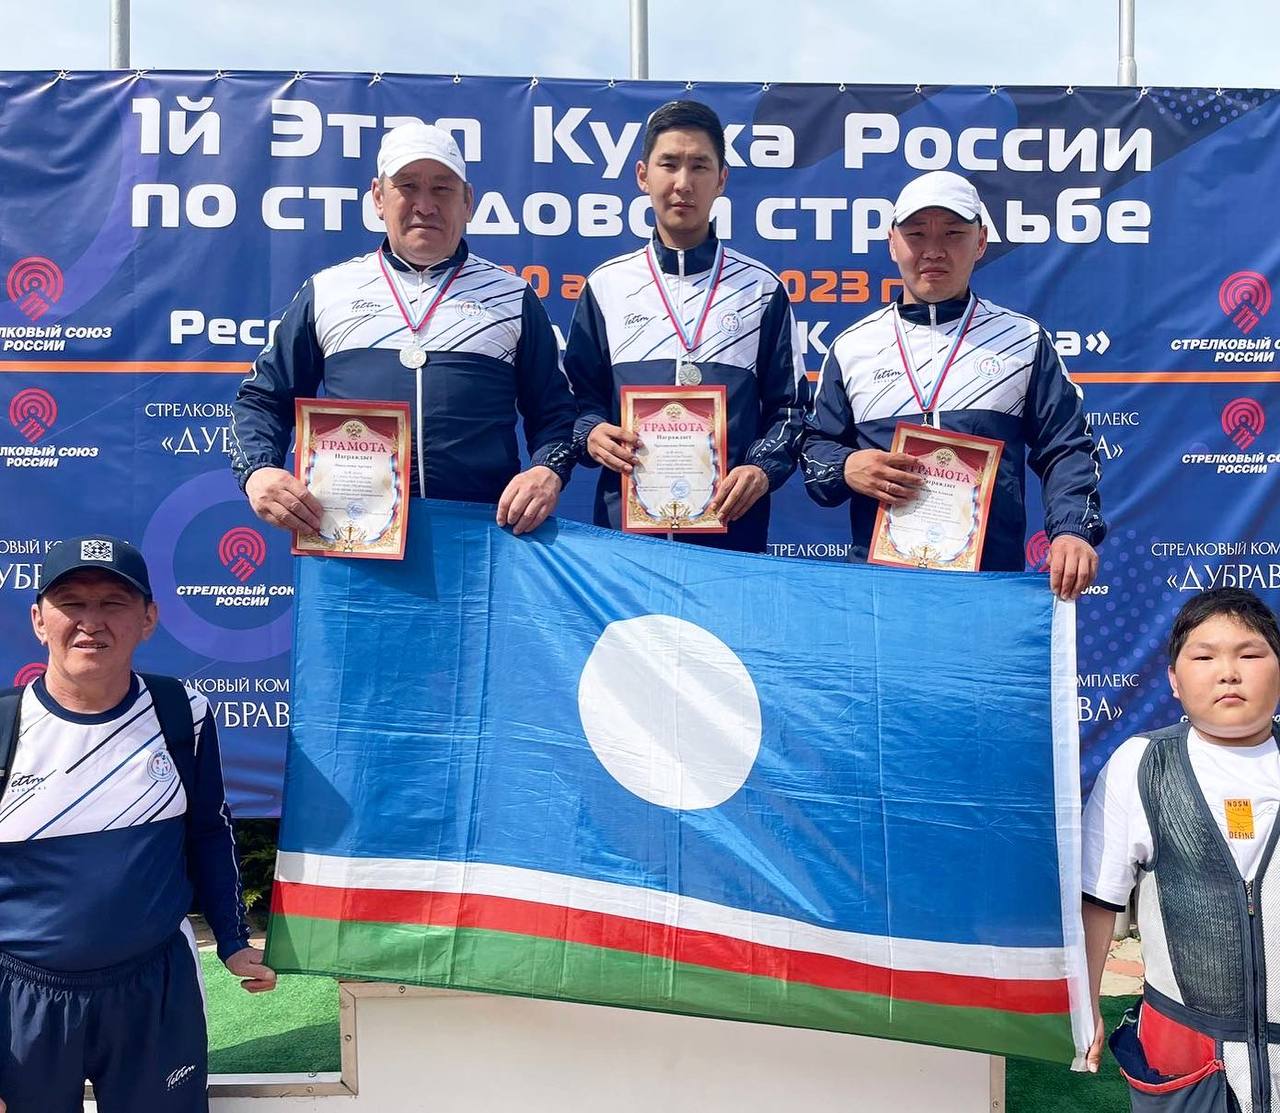 Сборная Якутии заняла второе место на соревнованиях по стендовой стрельбе в Краснодаре